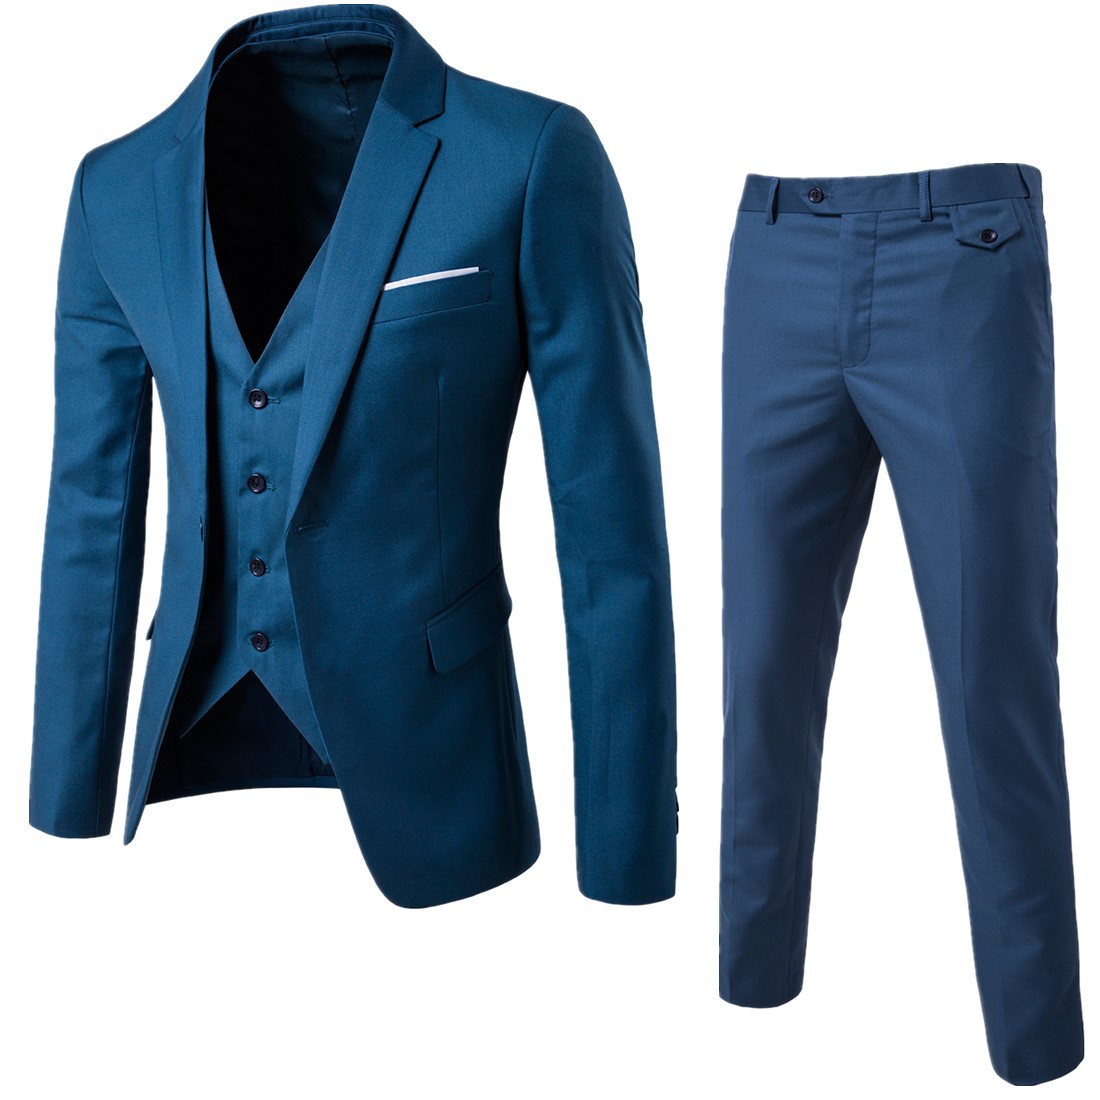 South Korean slim fit fashion Blazer men's 2019 new men's suit suit suit men's bridegroom dress three piece set